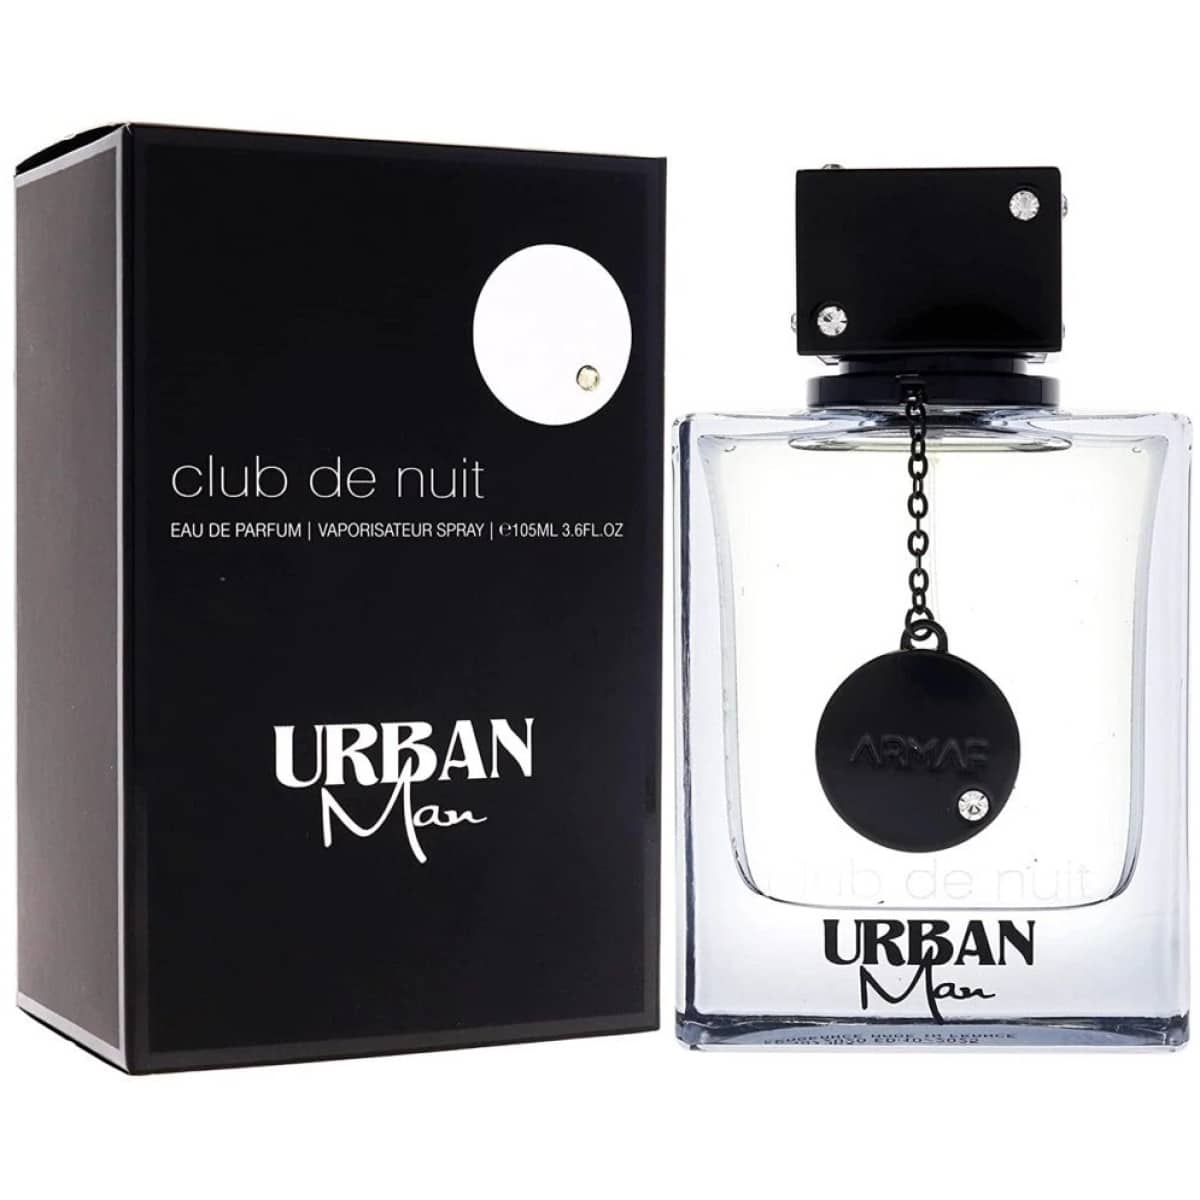 Armaf Club De Nuit Urban - Perfume For Men - EDP 100ml – DubaiOudh